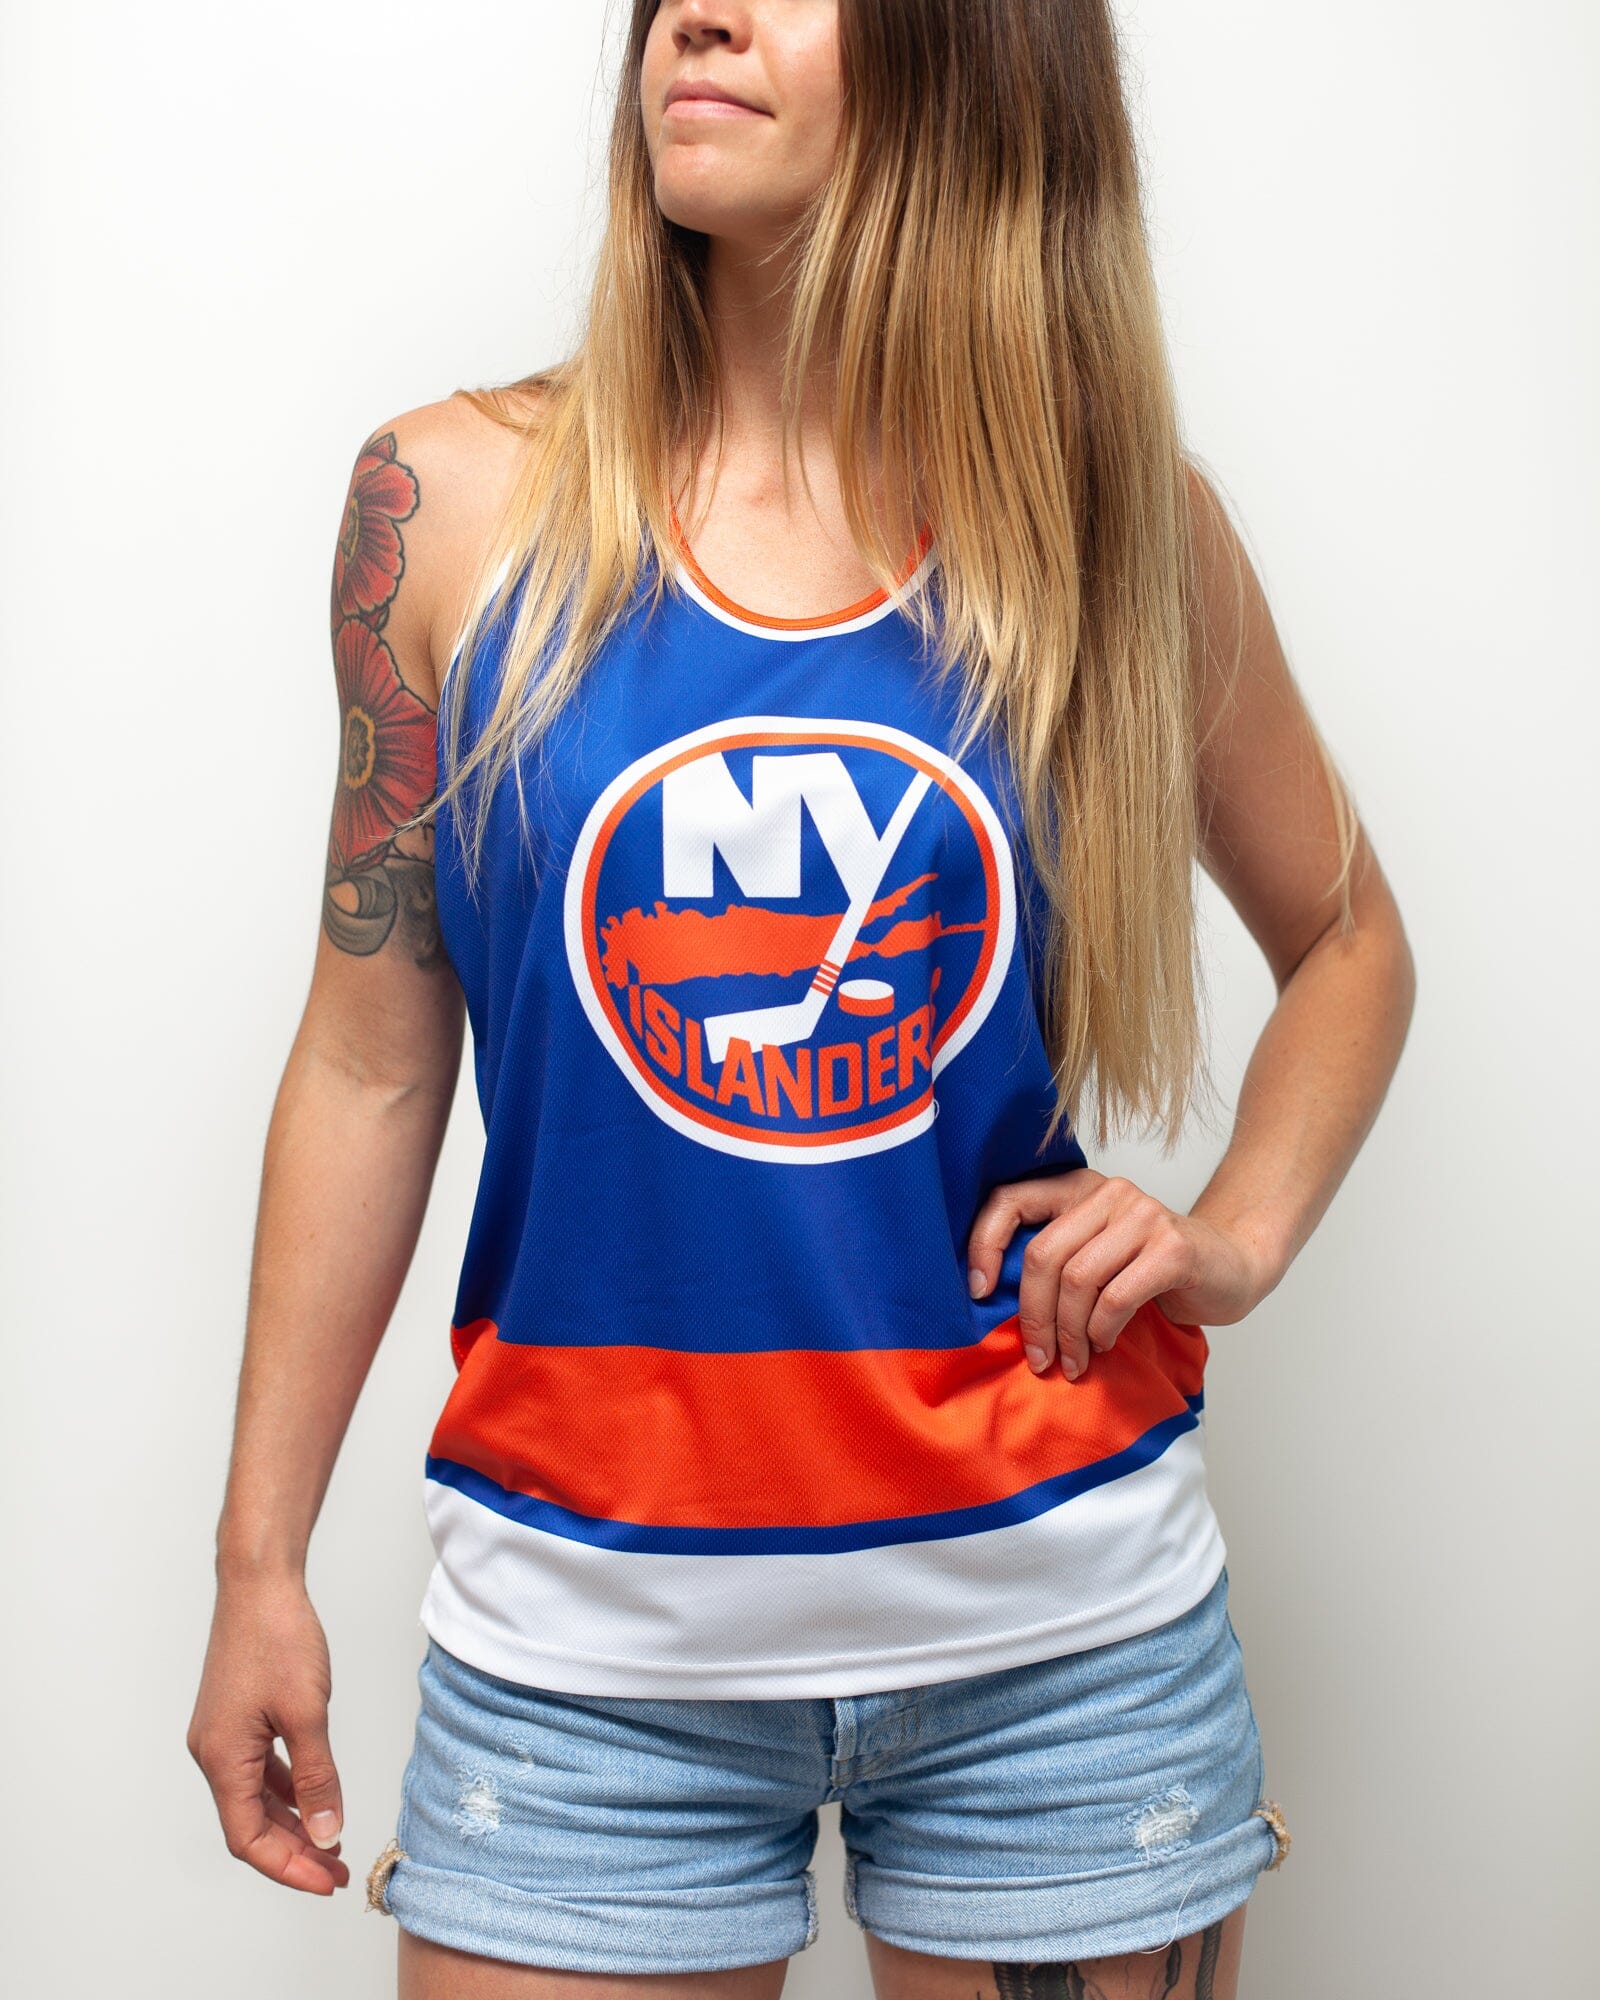 New York Islanders Women's Apparel, Islanders Ladies Jerseys, Clothing